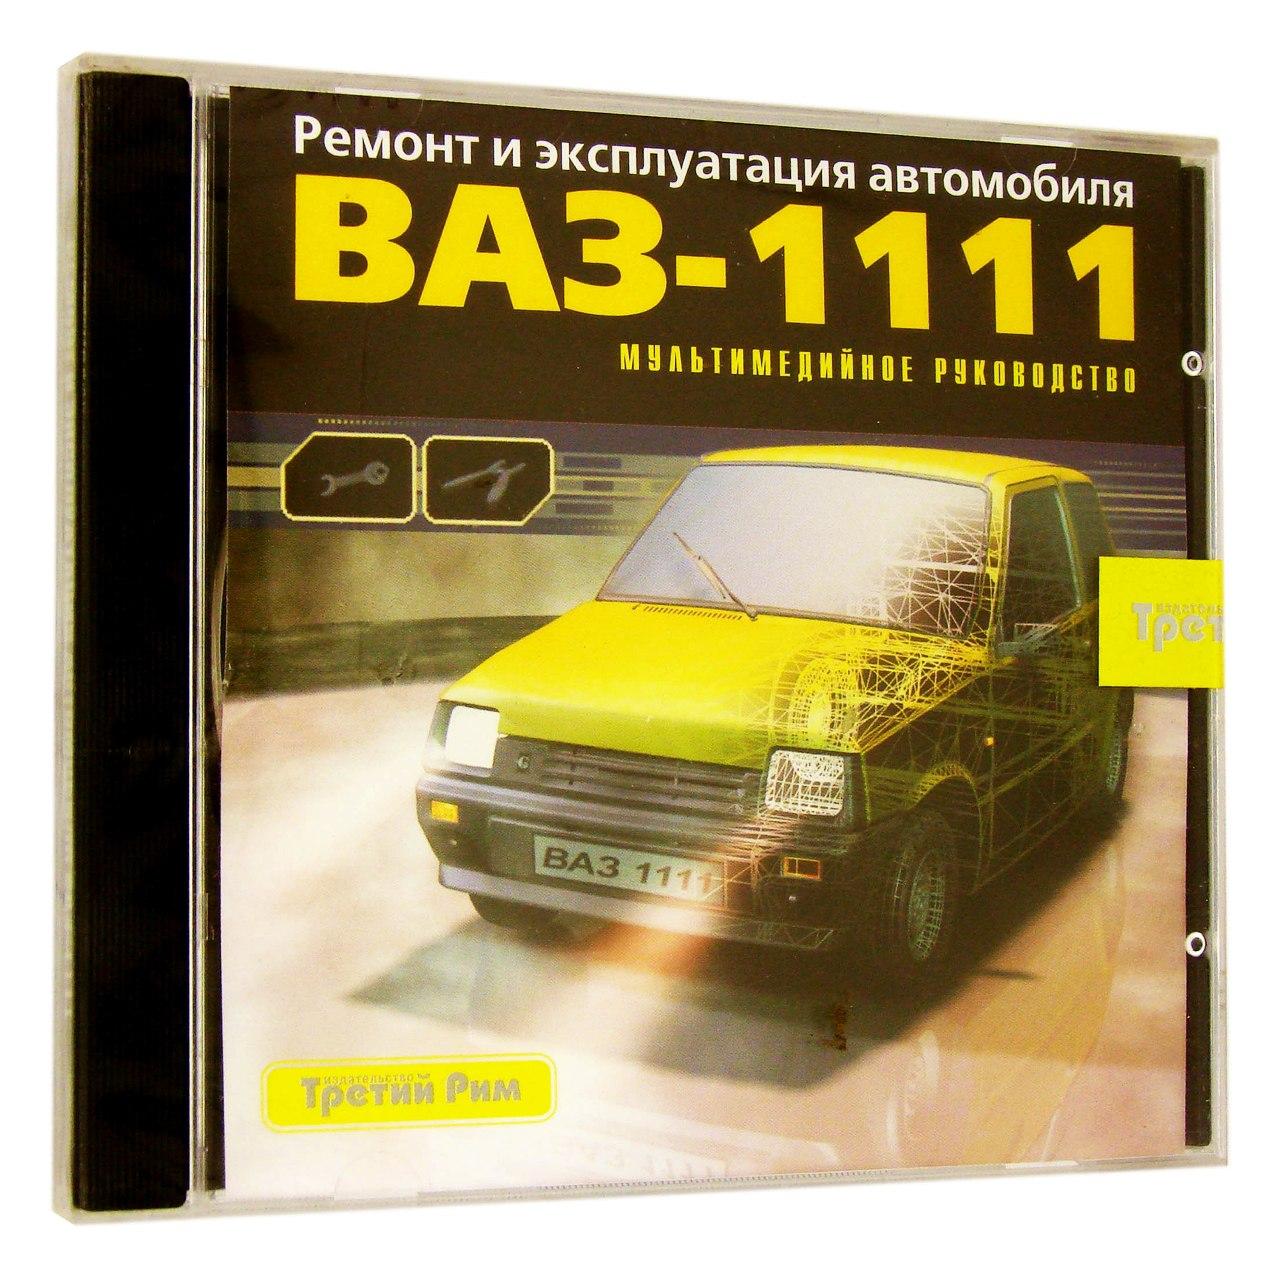 Компьютерный компакт-диск ВАЗ - 1111: ремонт и эксплуатация автомобиля (ПК), фирма "Медиа Ворлд", 1CD